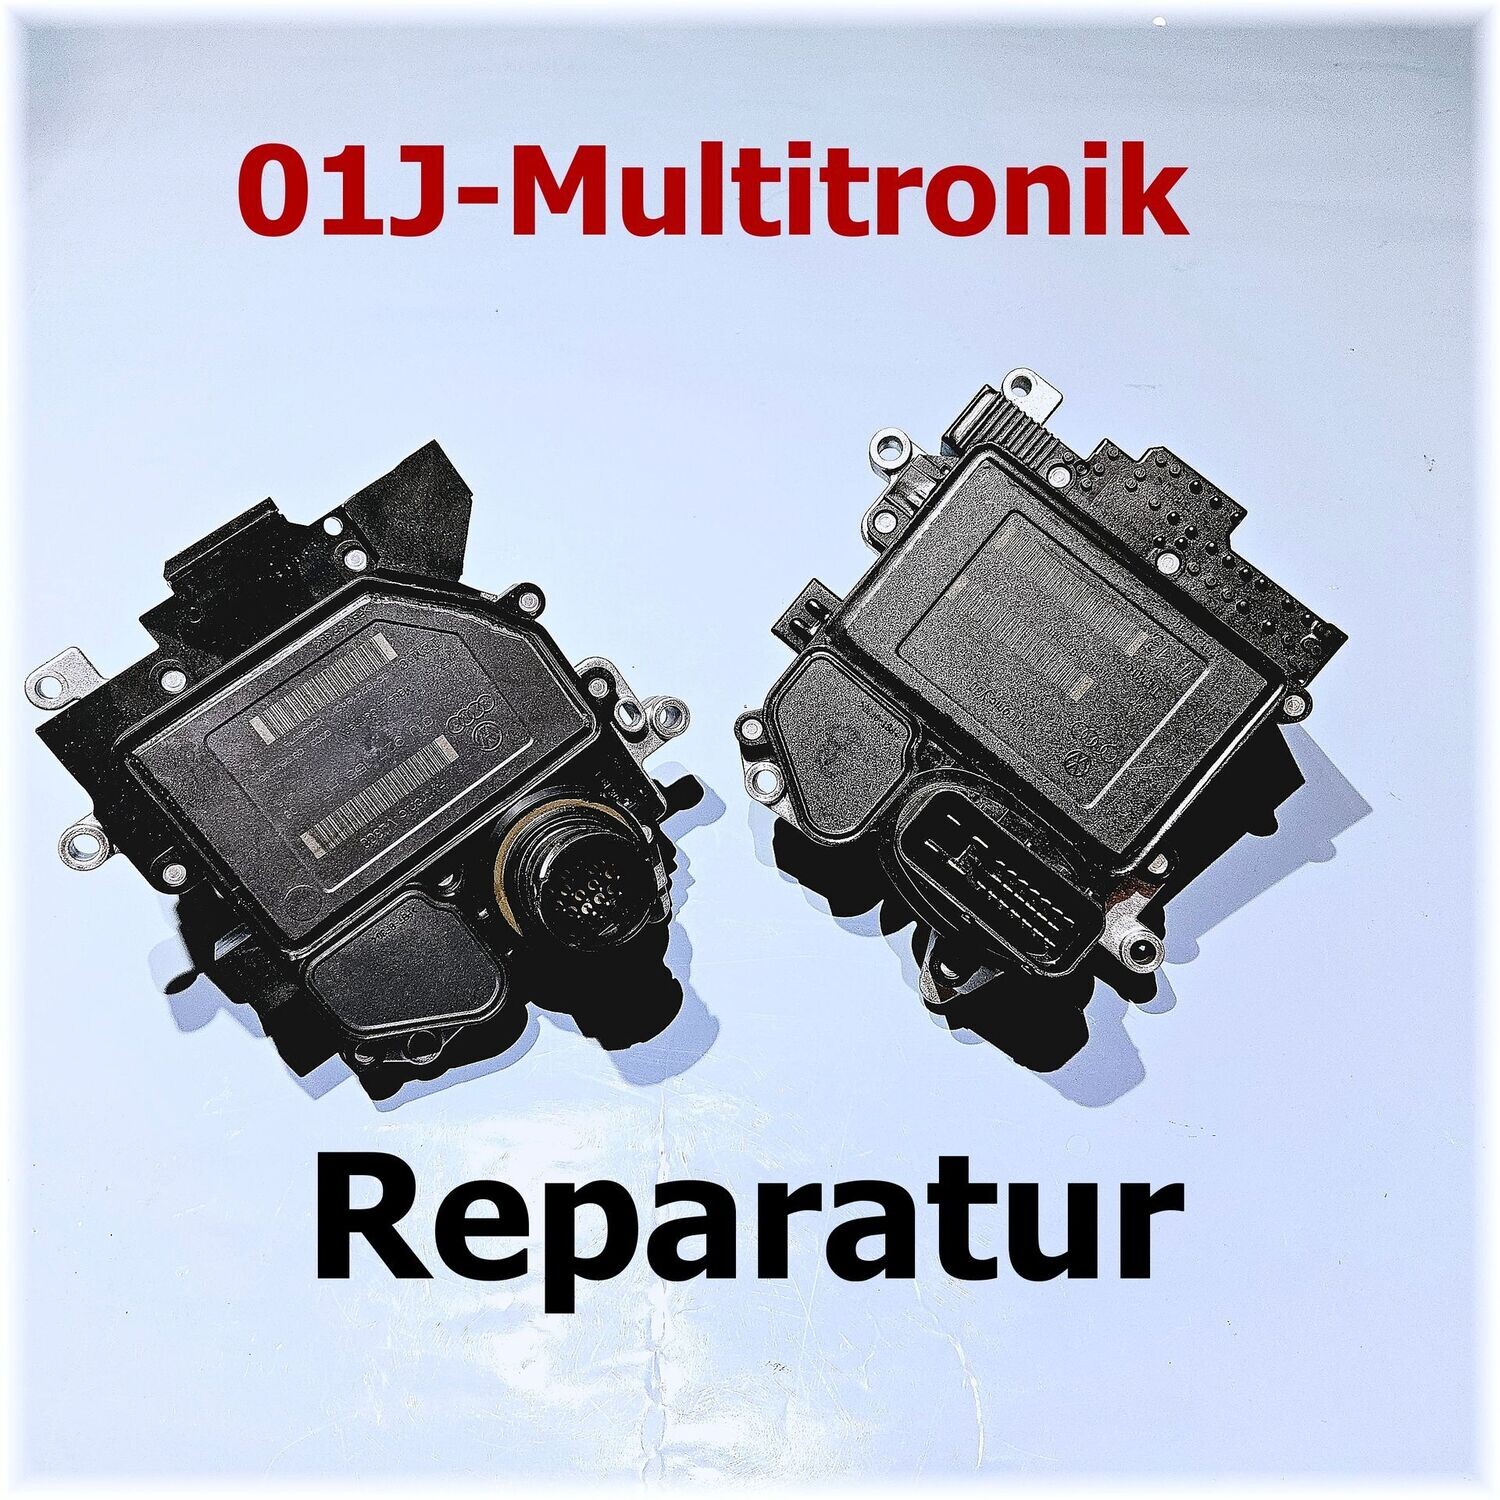 Steuergerät Reparatur Multitronic, 01J, Audi